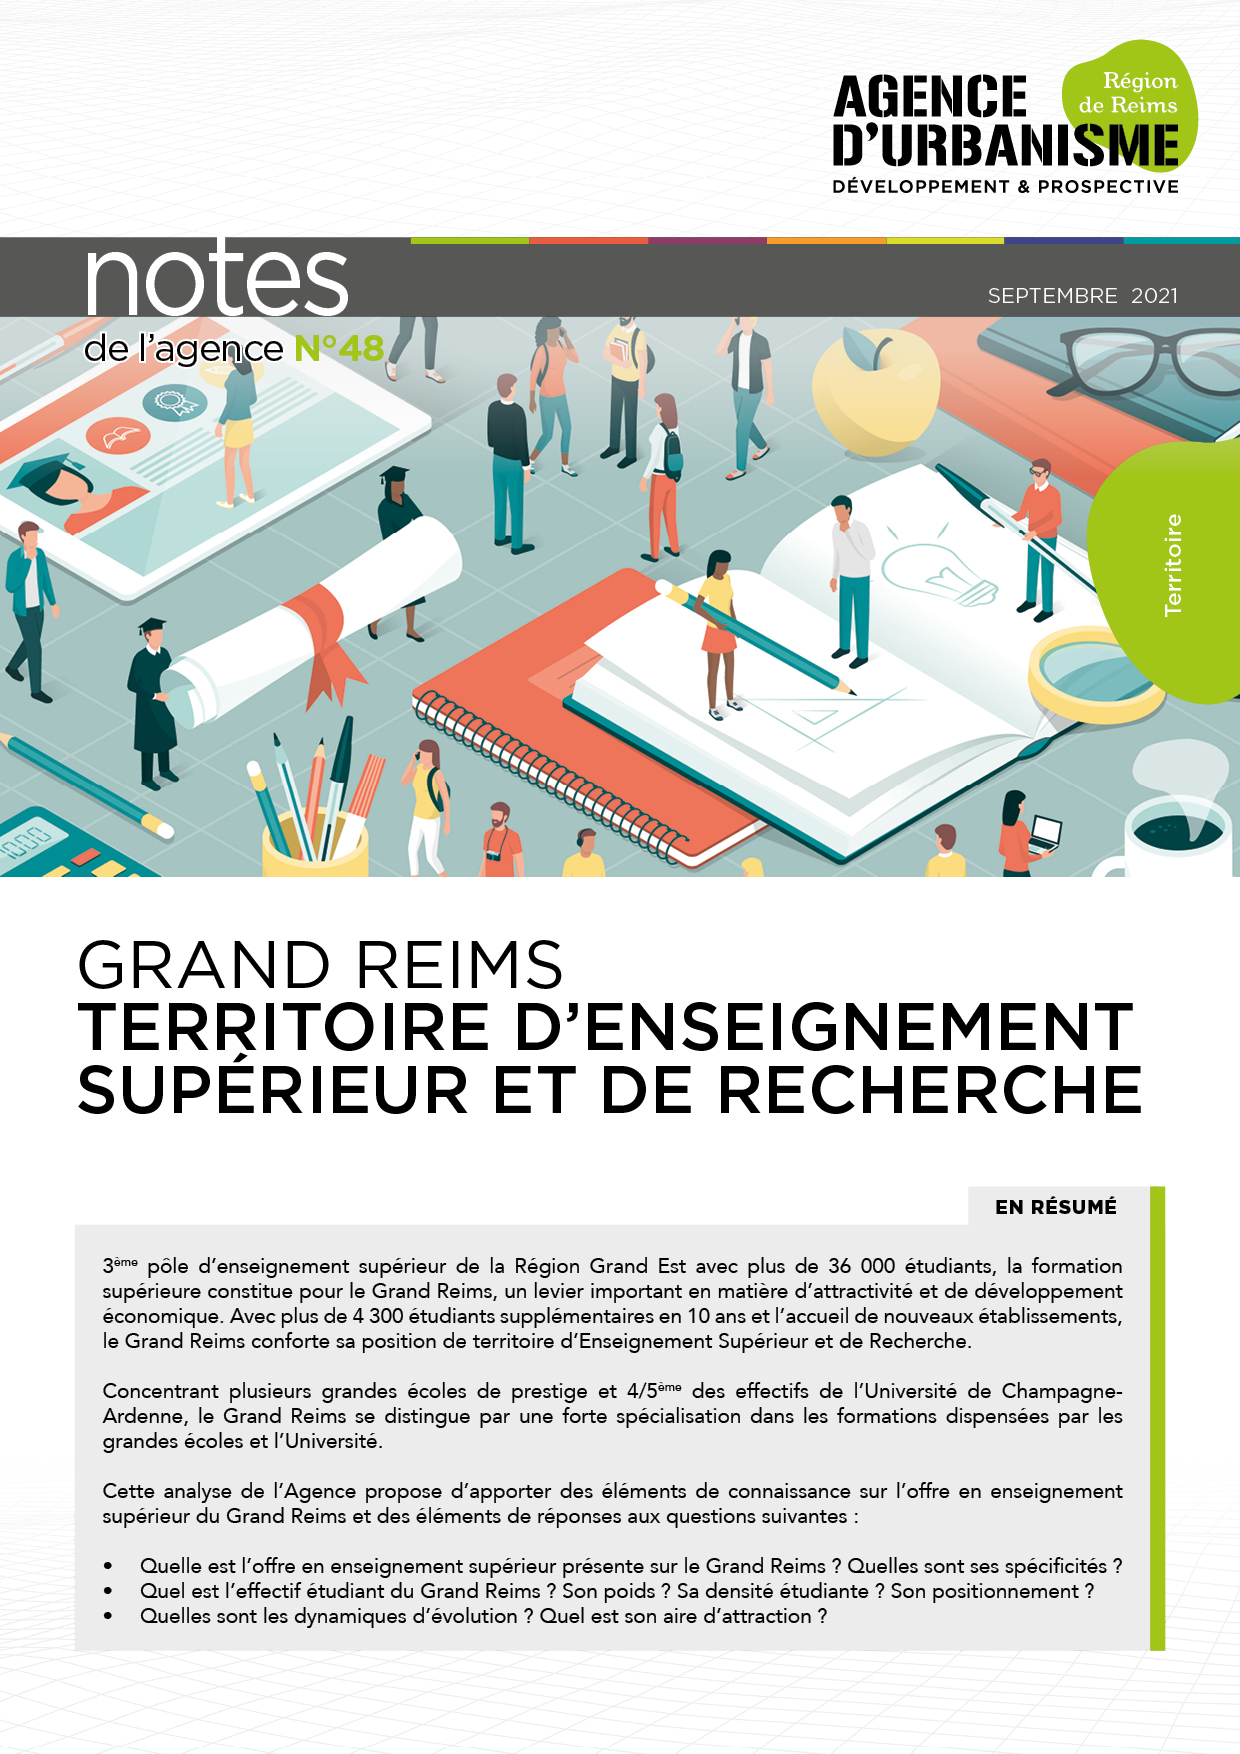 Note 48 : Grand Reims, Territoire d'Enseignement Supérieur et de Recherche